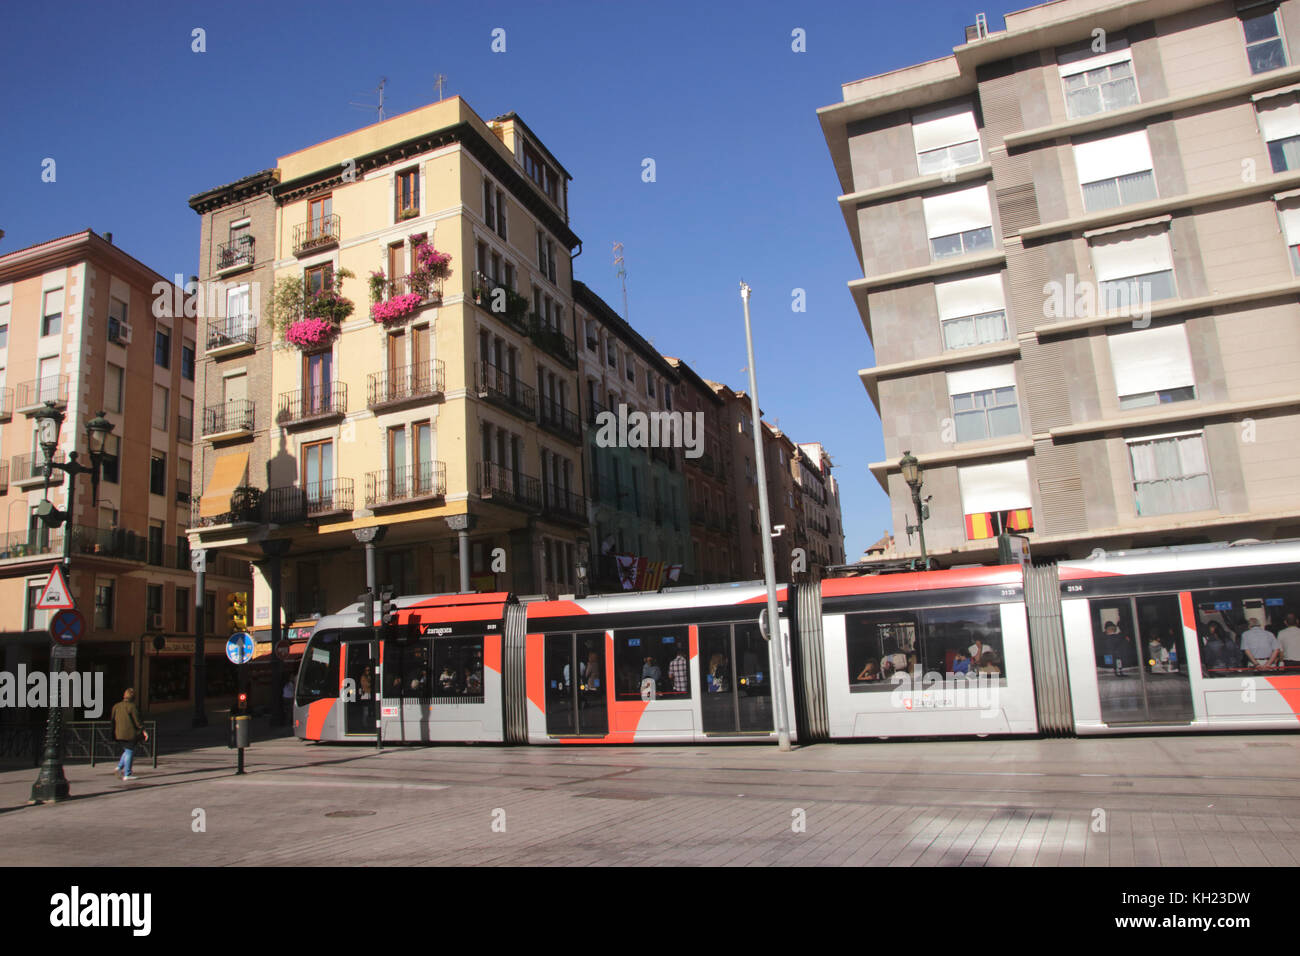 Tram in Avenida de Cesar Augusto Zaragoza Spain Stock Photo